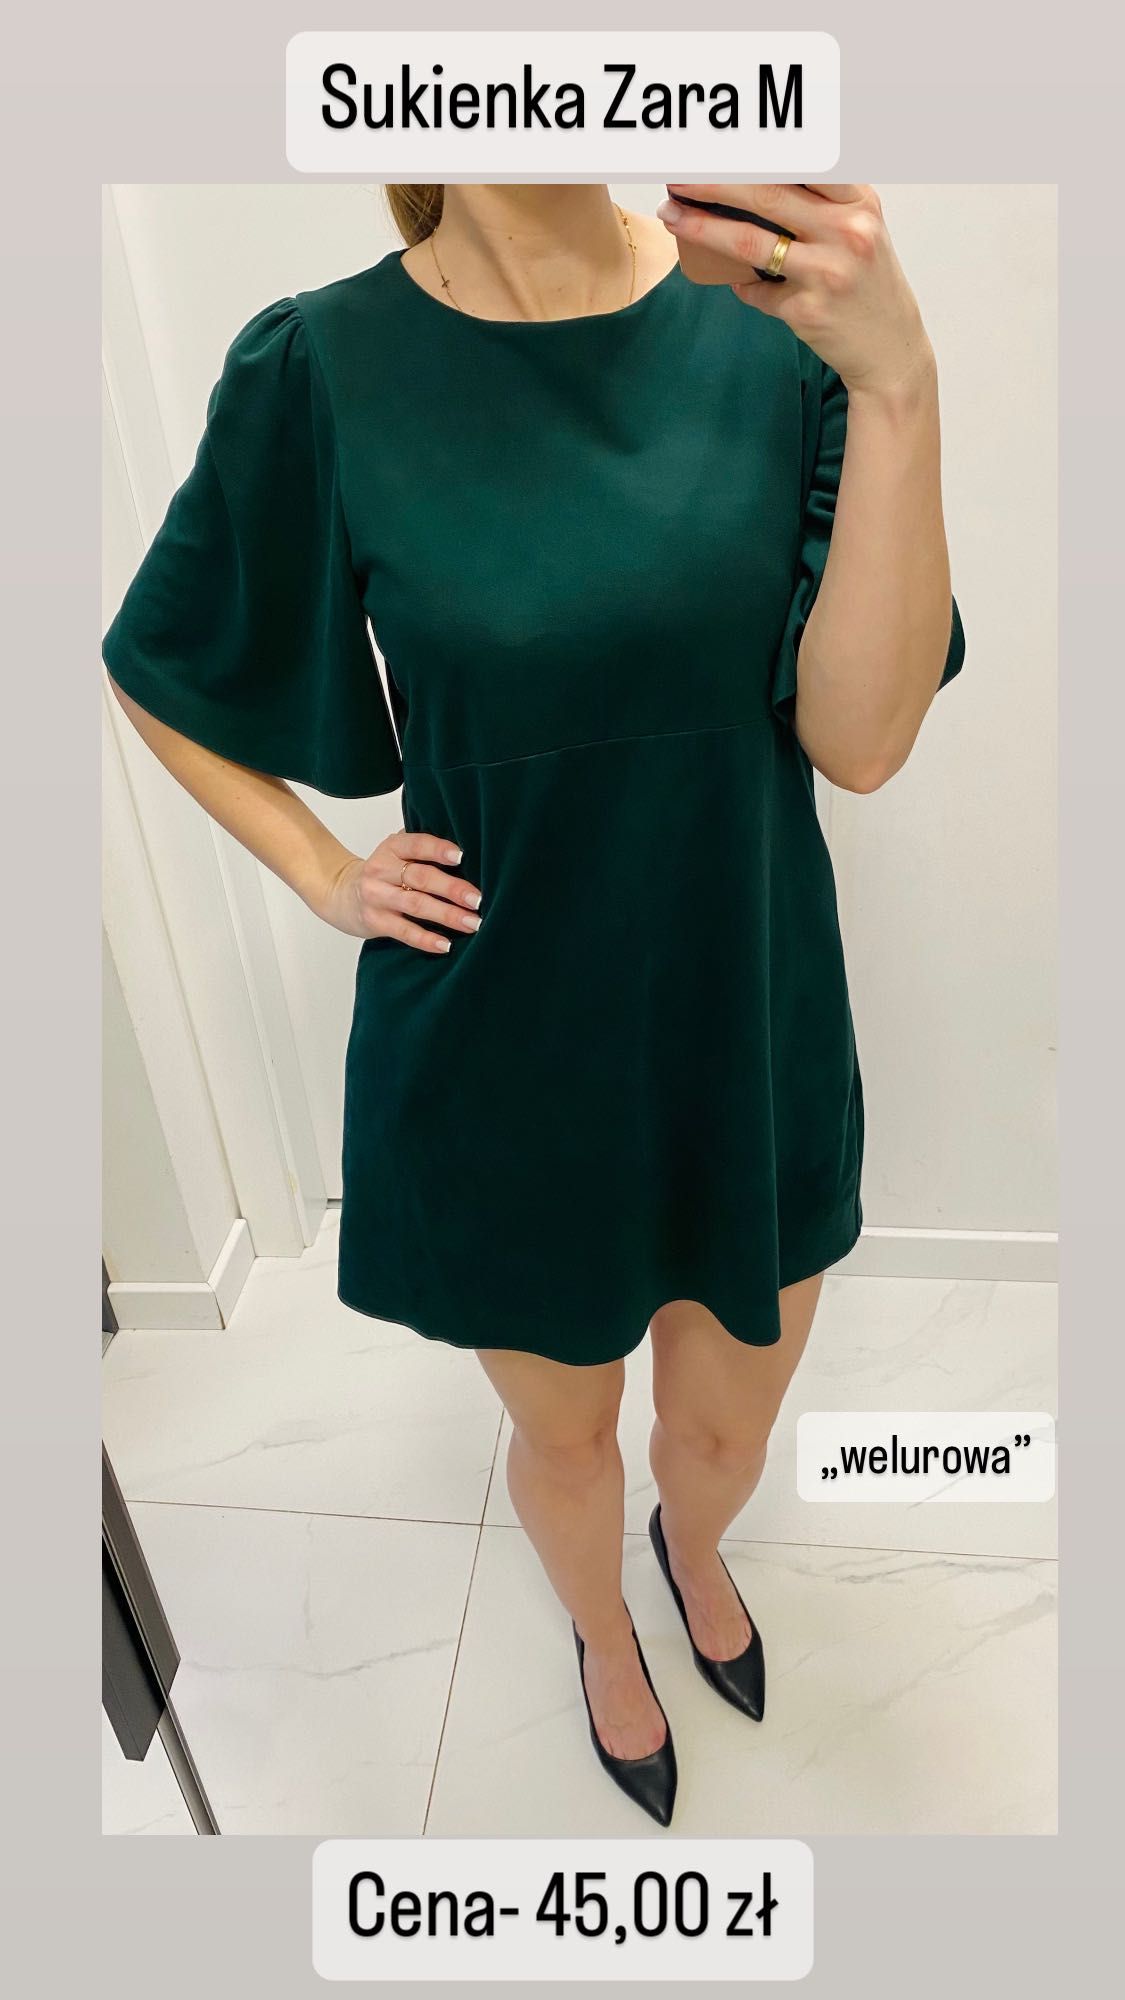 Welurowa aksamitna sukienka Zara M butelkowa zieleń krótki rękaw